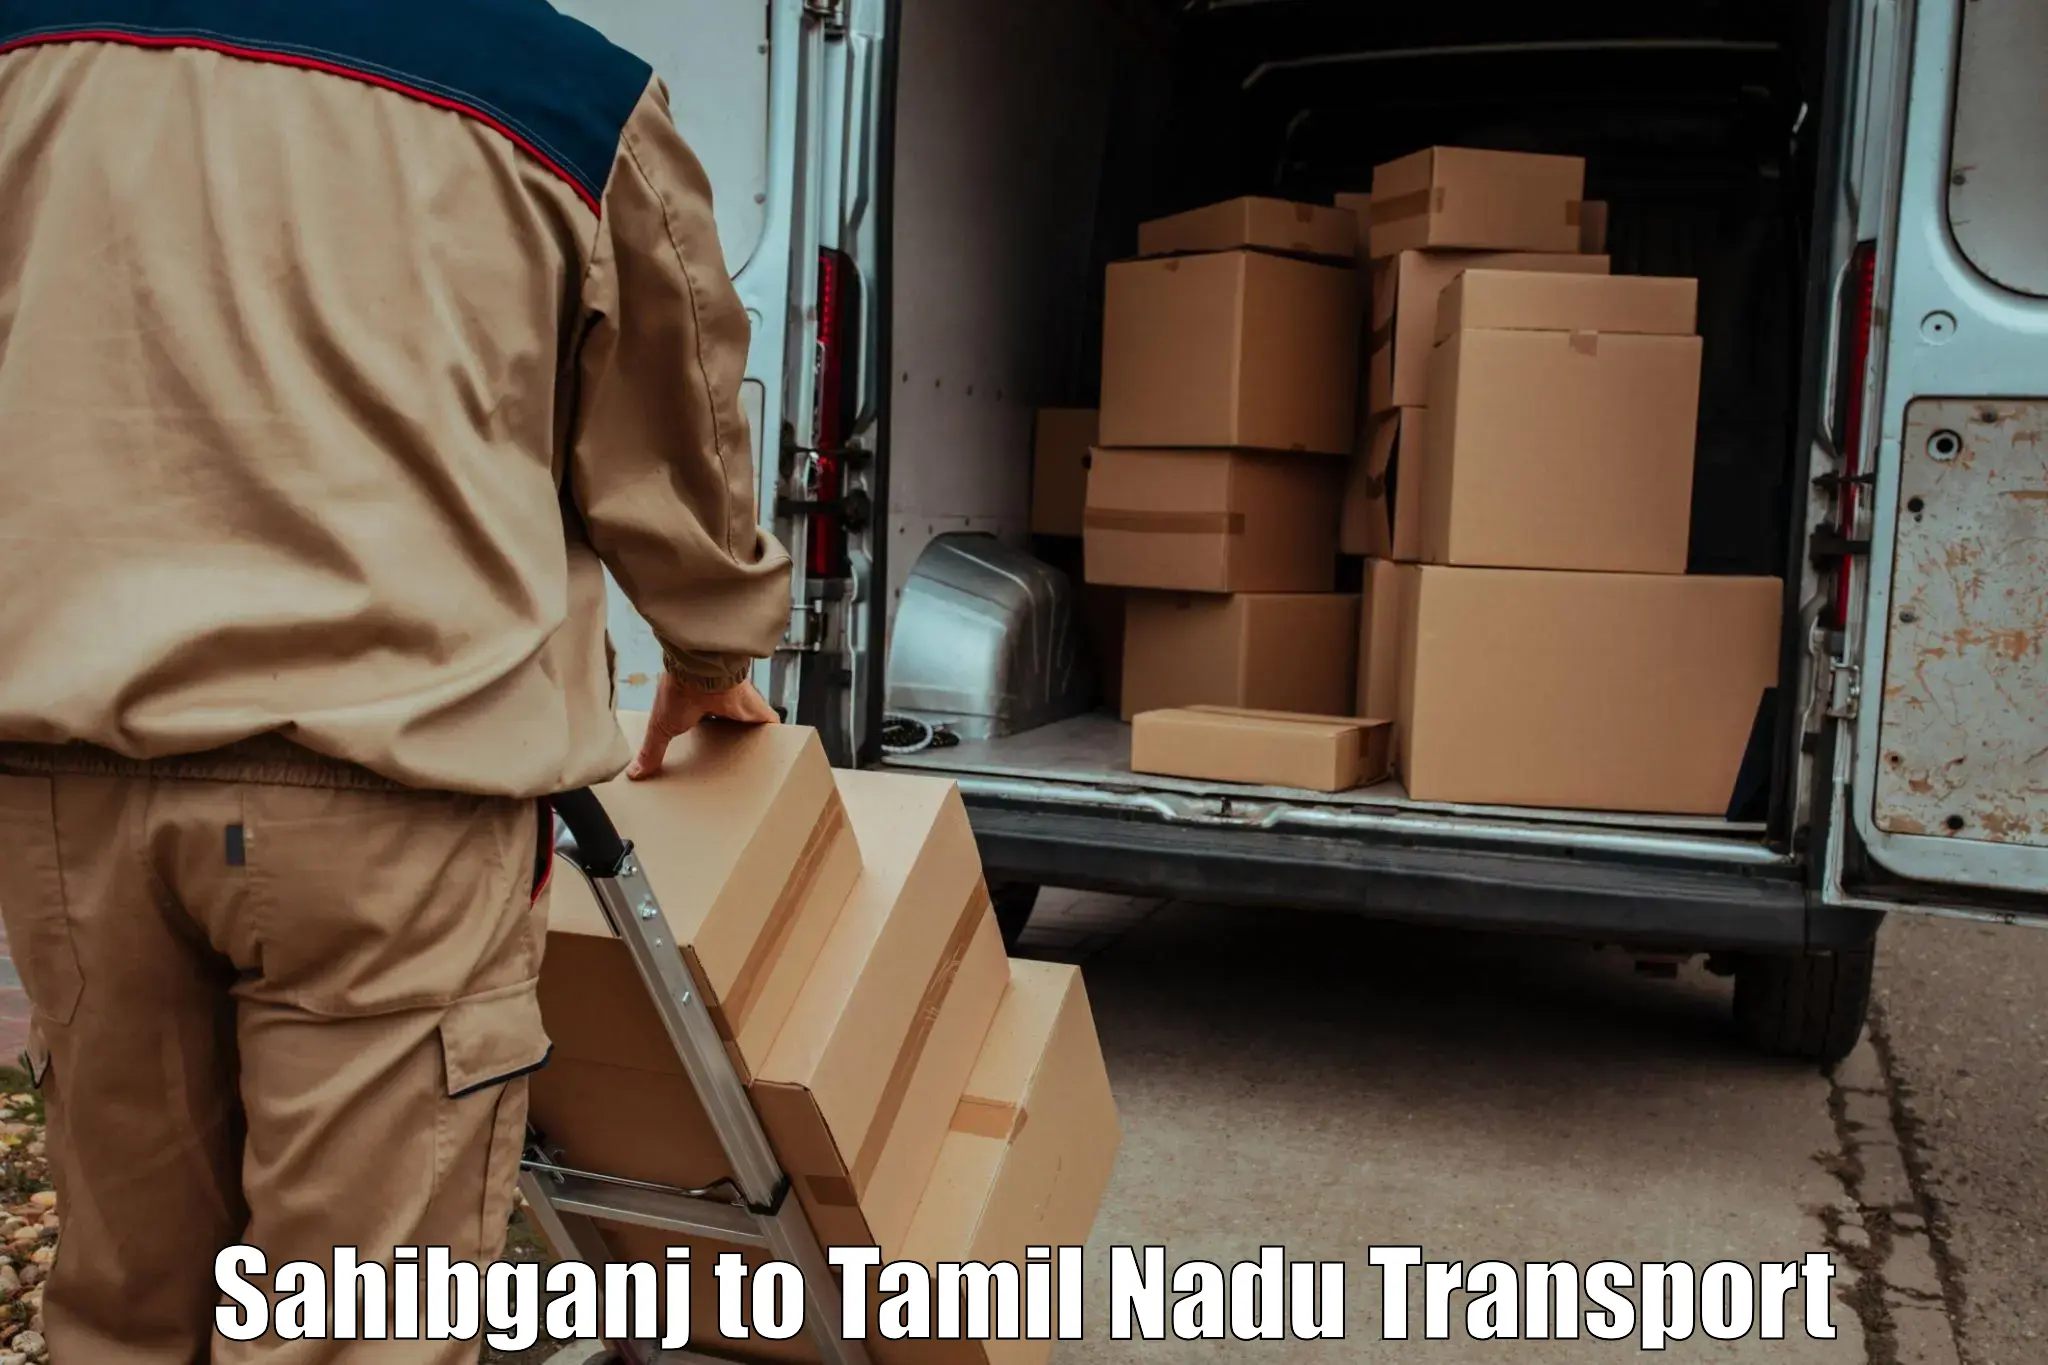 Land transport services Sahibganj to IIIT Tiruchirappalli